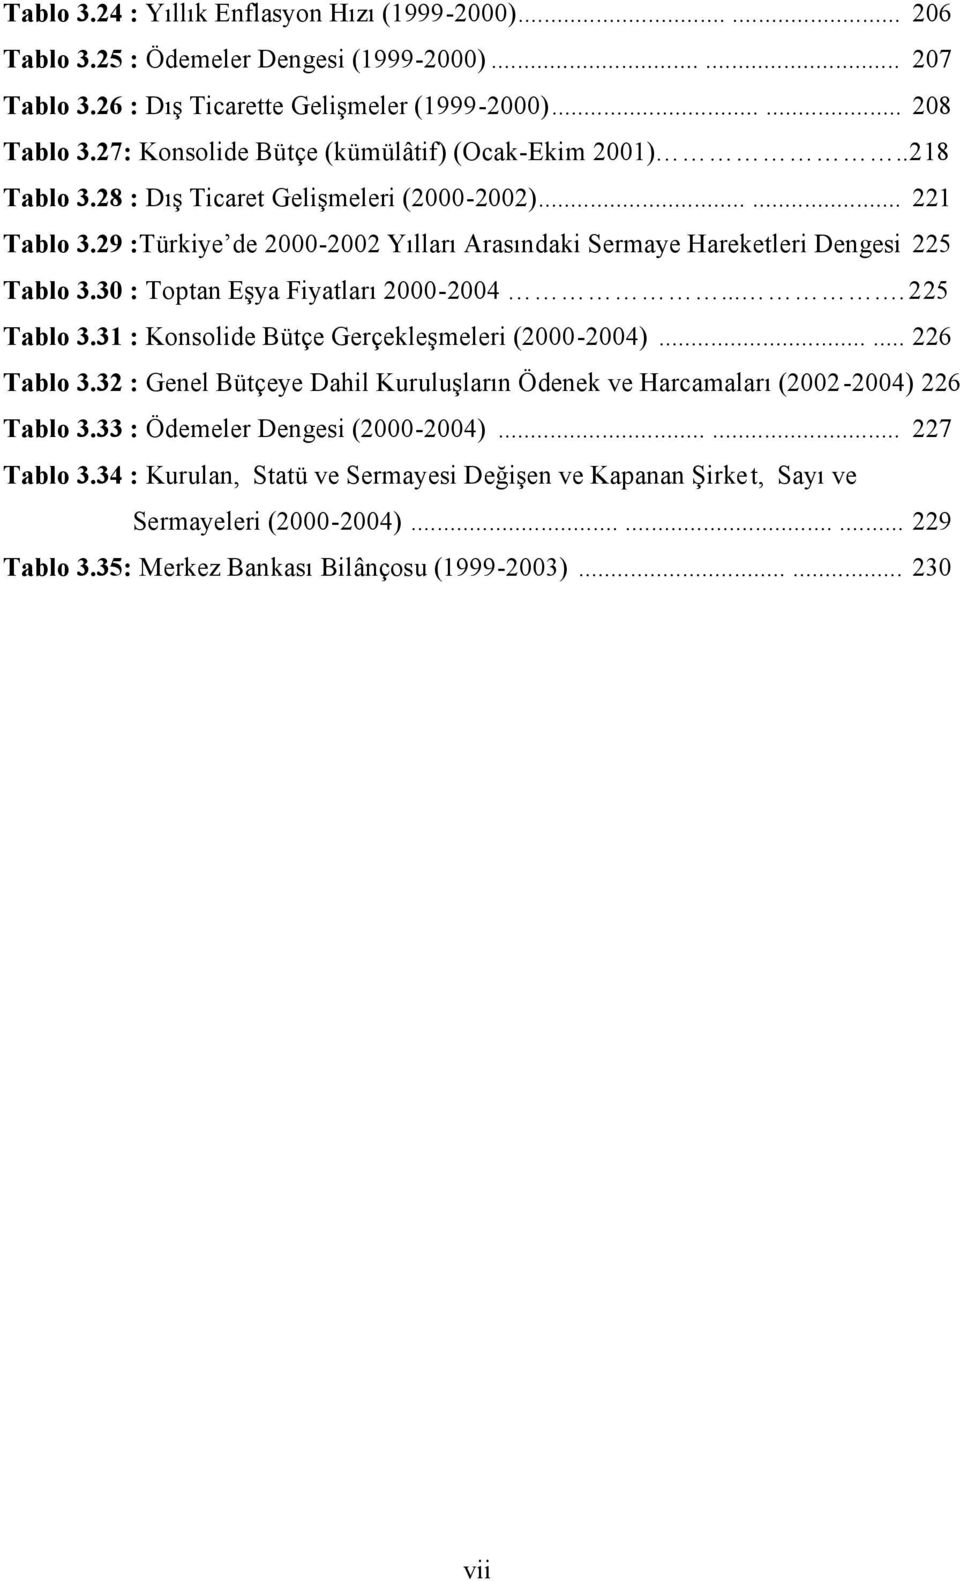 29 :Türkiye de 2000-2002 Yılları Arasındaki Sermaye Hareketleri Dengesi 225 Tablo 3.30 : Toptan Eşya Fiyatları 2000-2004.... 225 Tablo 3.31 : Konsolide Bütçe Gerçekleşmeleri (2000-2004)...... 226 Tablo 3.